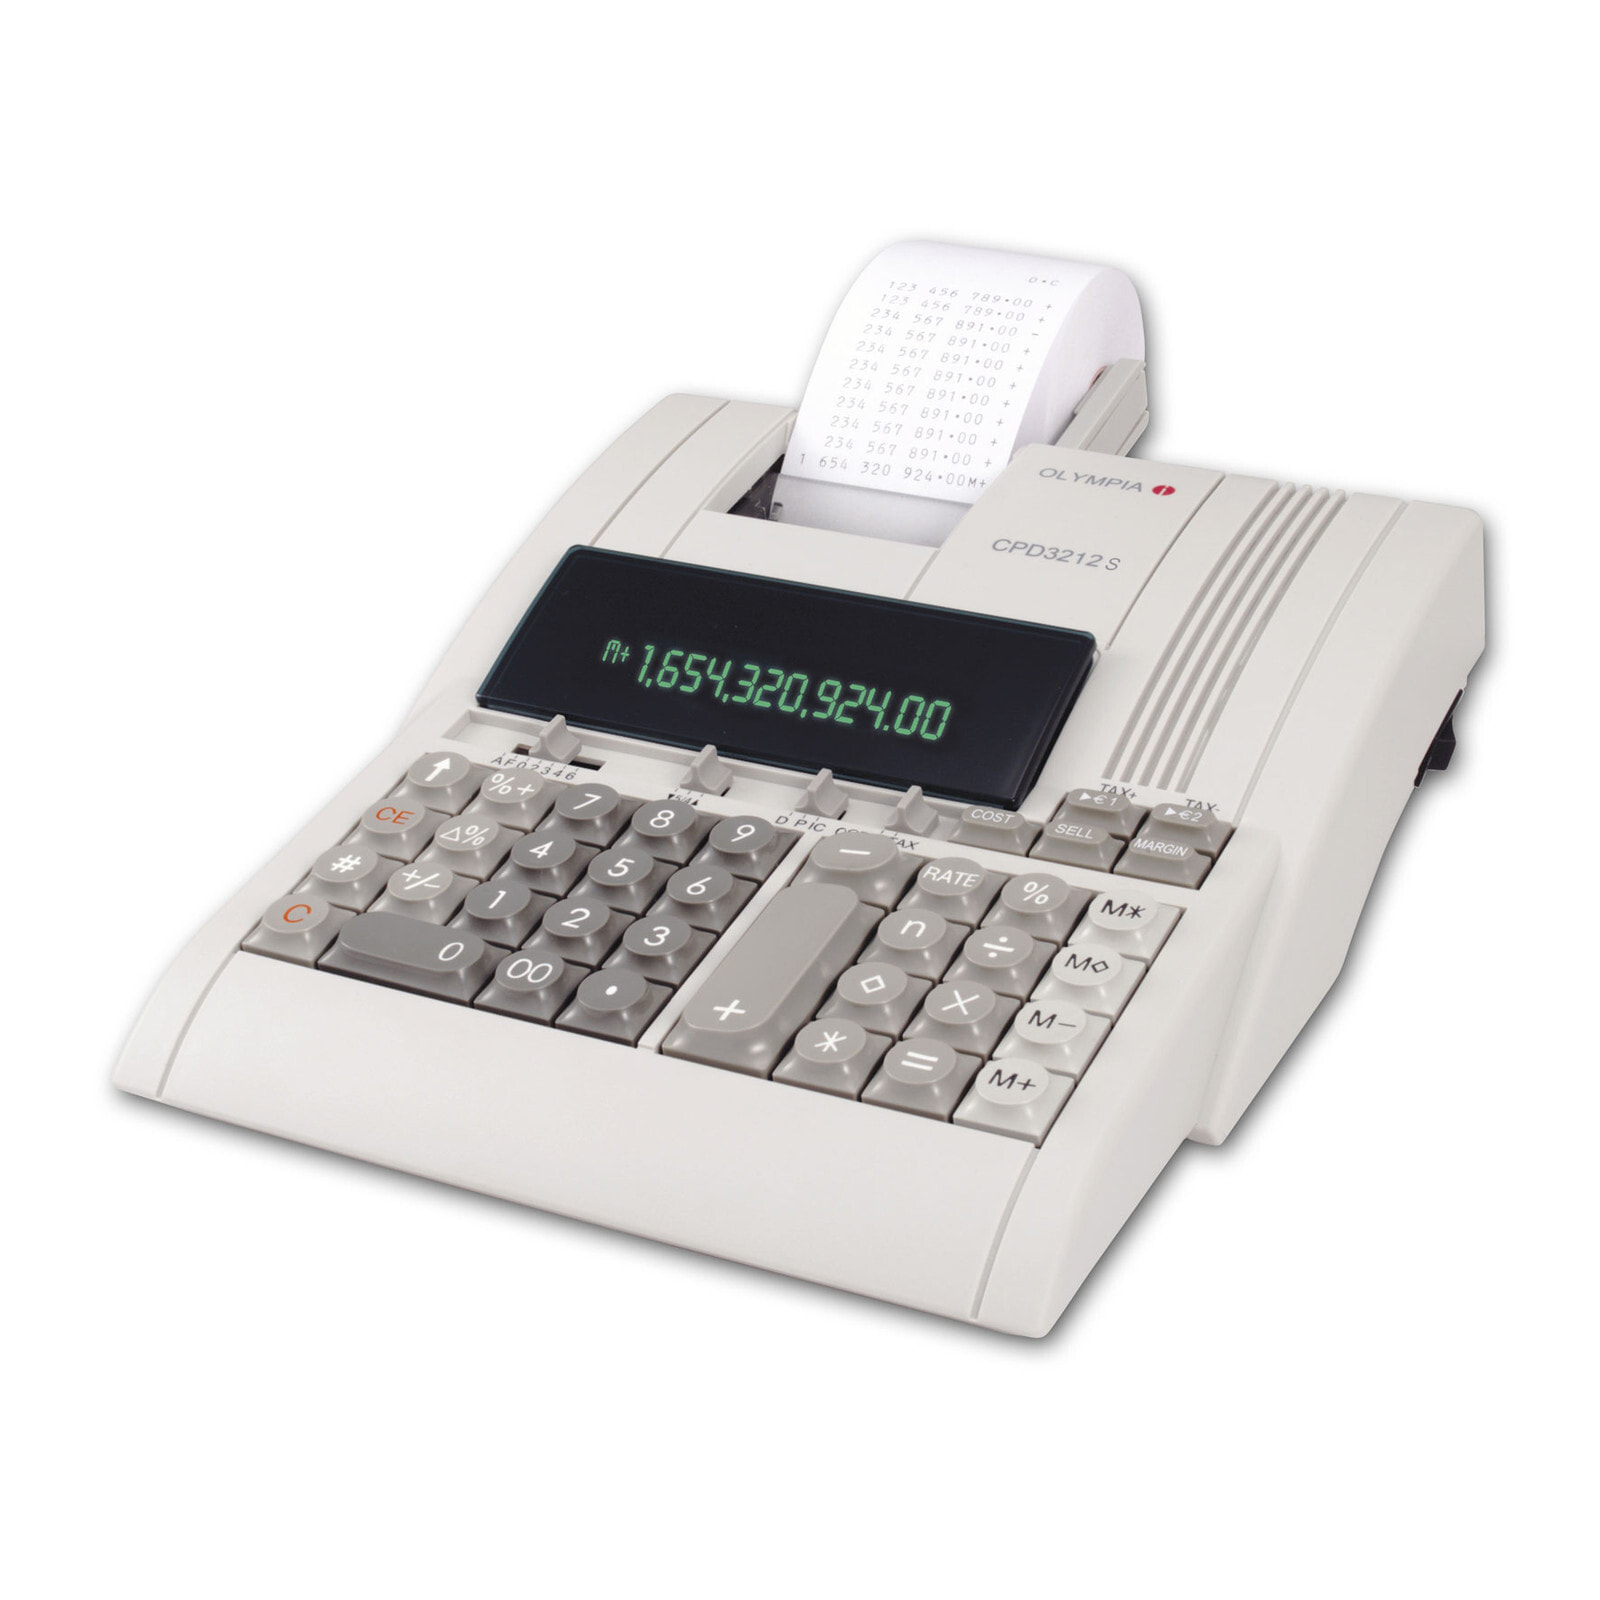 Olympia CPD 3212 T калькулятор Настольный Печатающий 946776005